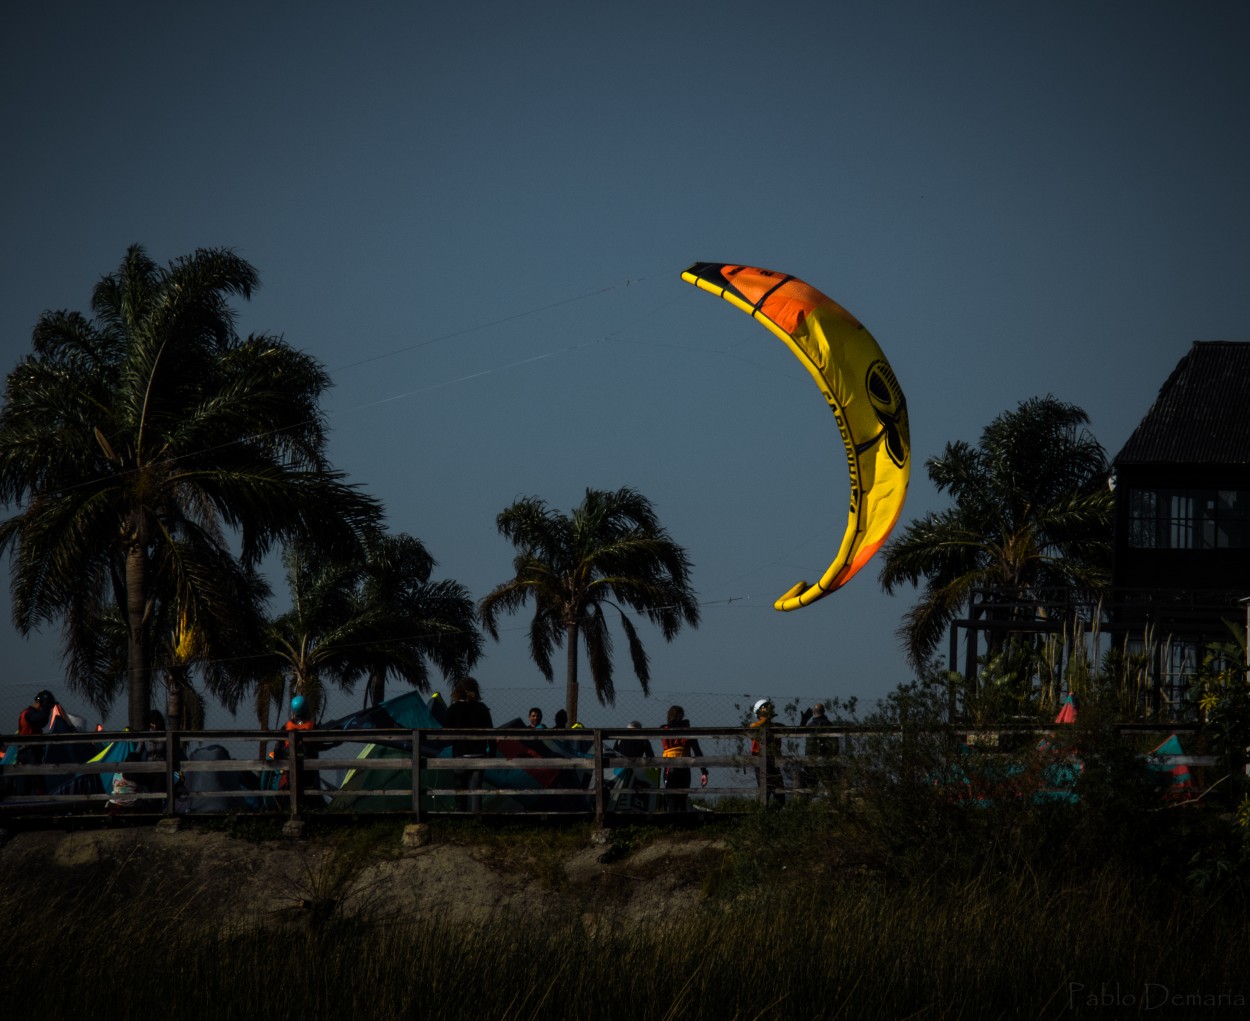 "Kitesurfing" de Pablo Demaria